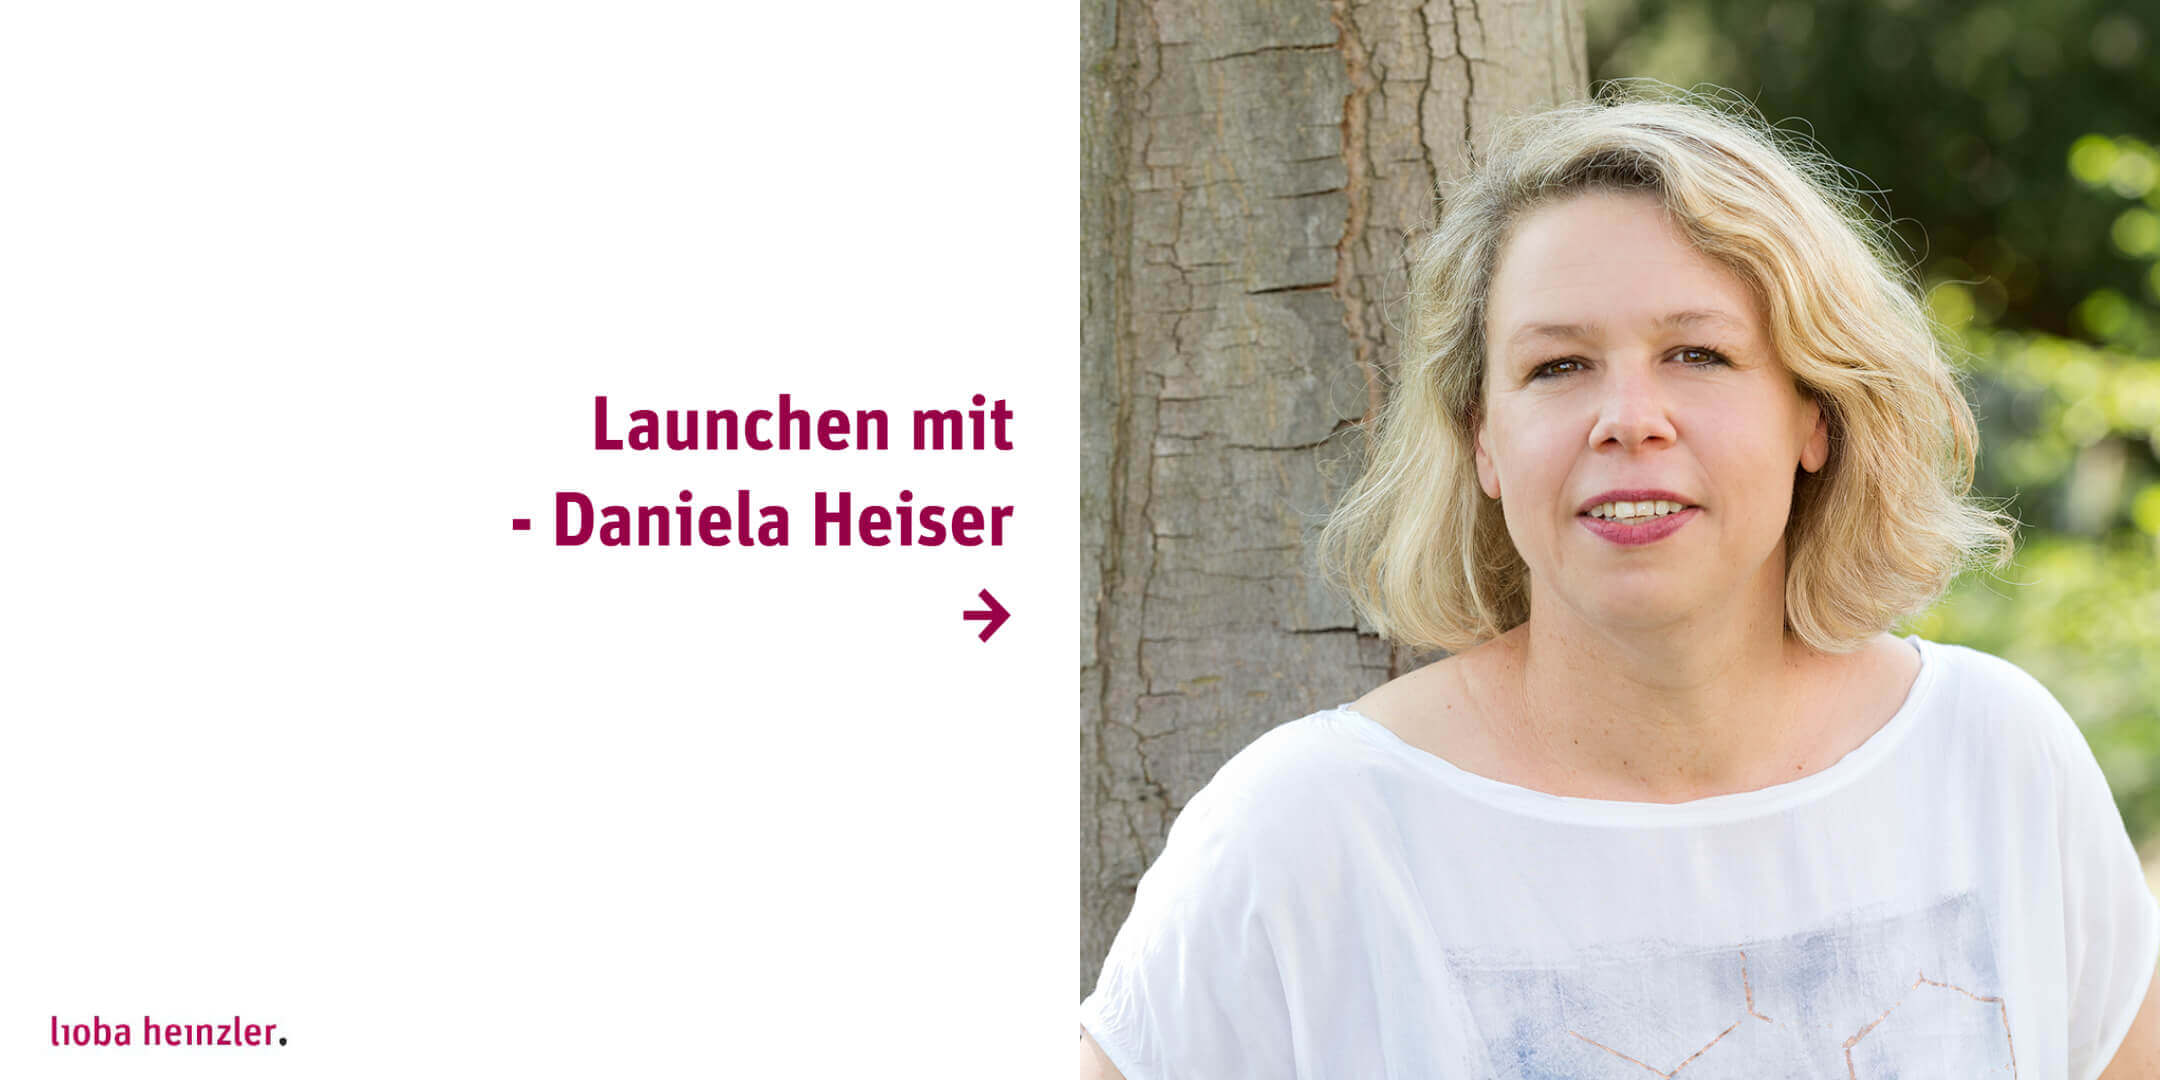 Launchen mit Daniela Heiser